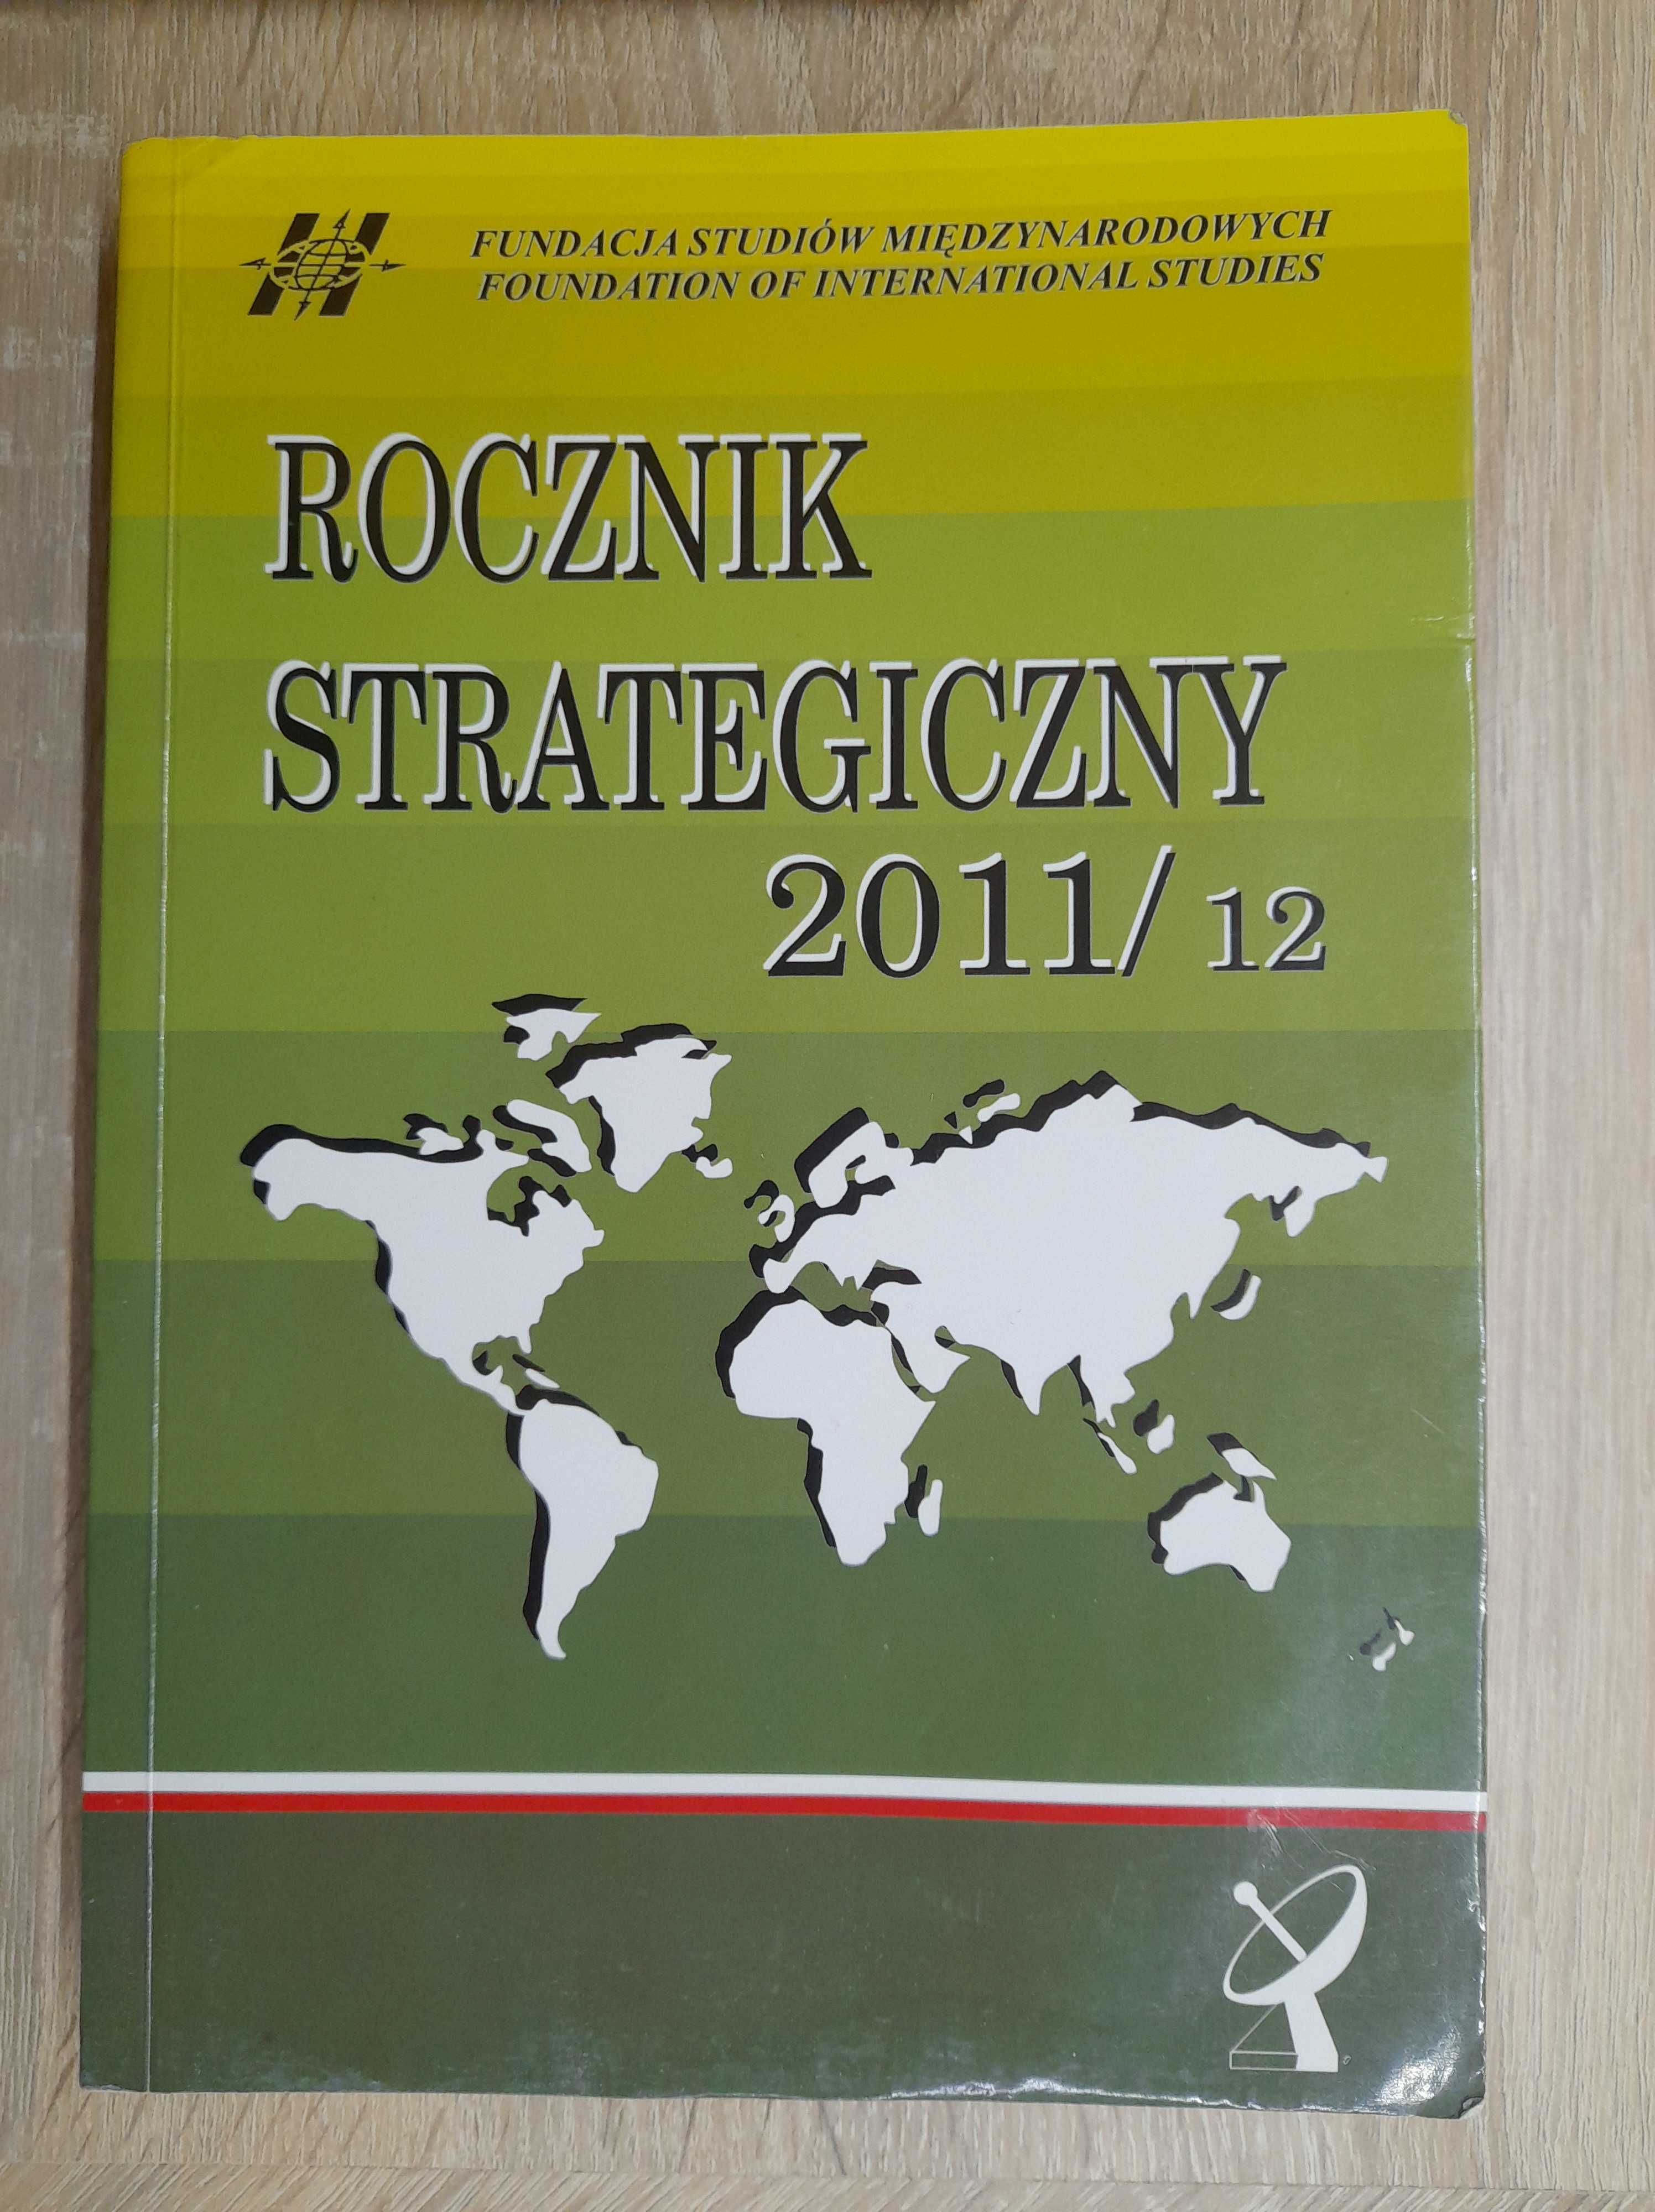 Rocznik strategiczny 2011/12  Praca zbiorowa Roman Kuźniar NOWA TOM 17